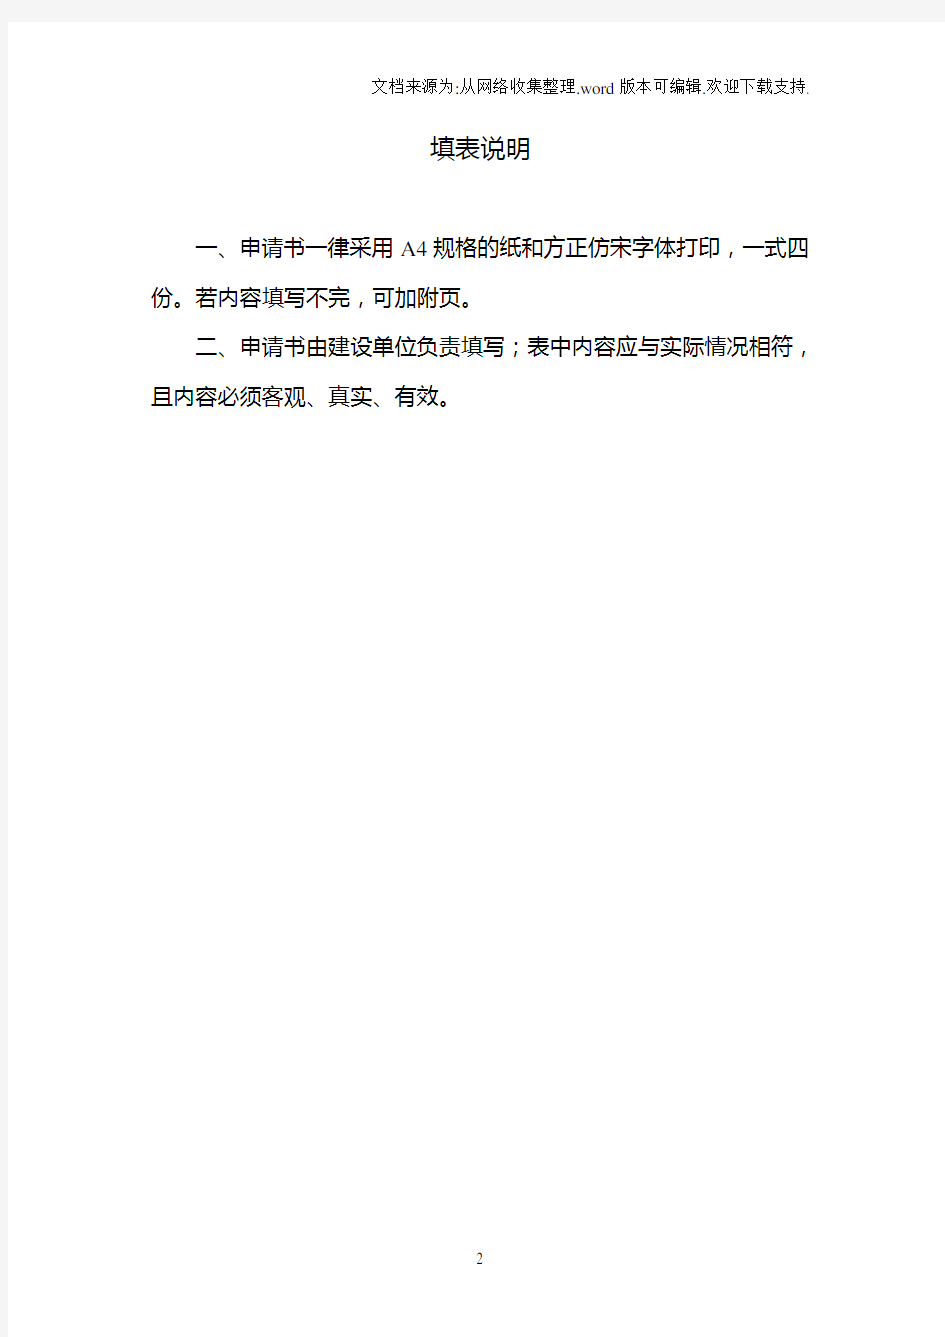 重庆市建筑能效(绿色建筑)测评与标识申请表填写范例